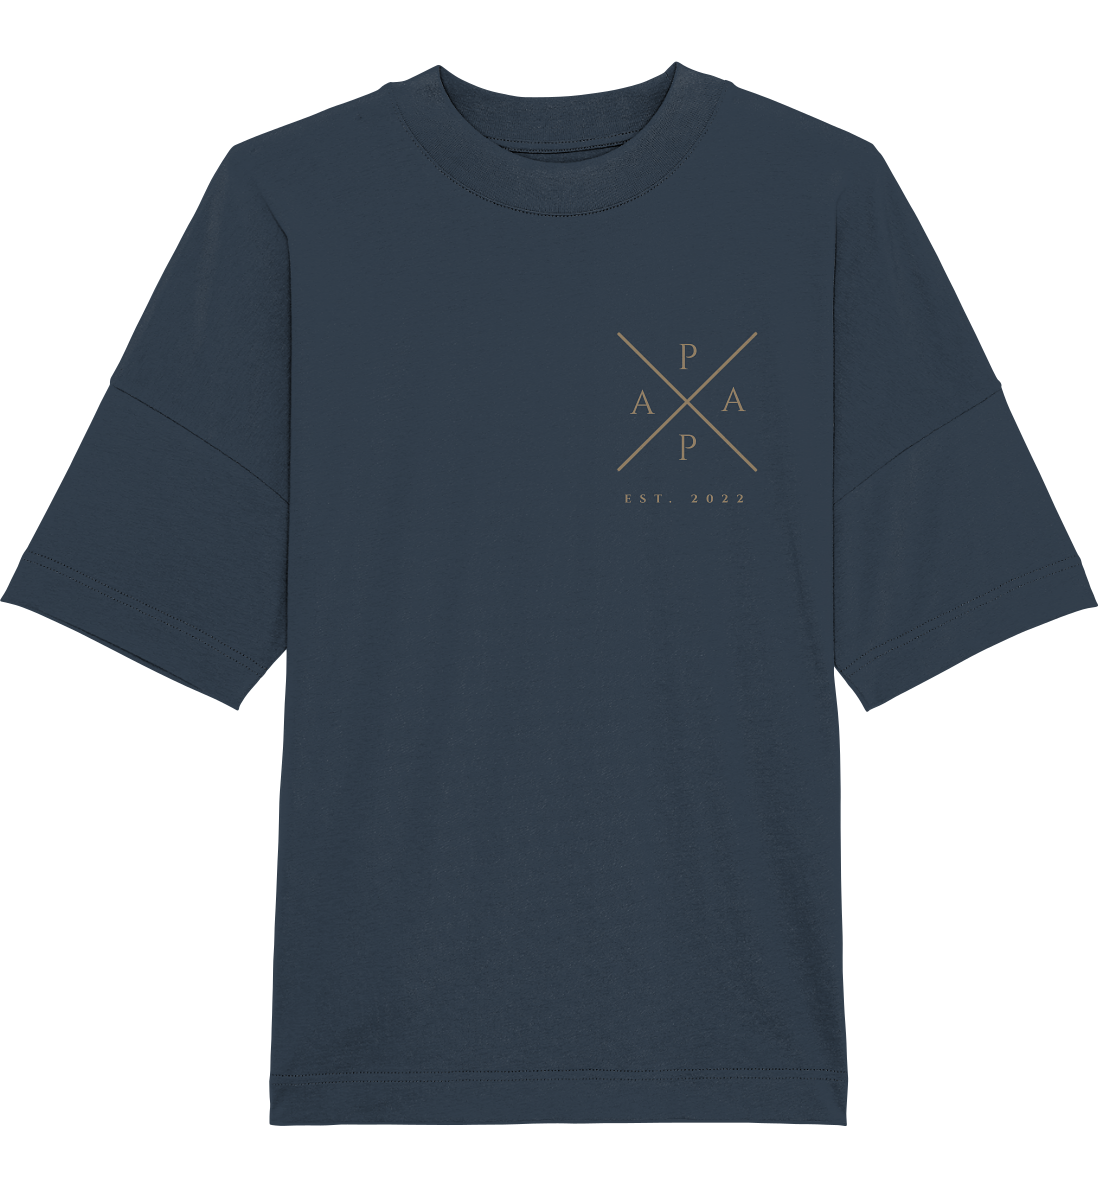 Papa Cross Oversized Shirt - Datum personalisierbar - 100% Bio-Baumwolle